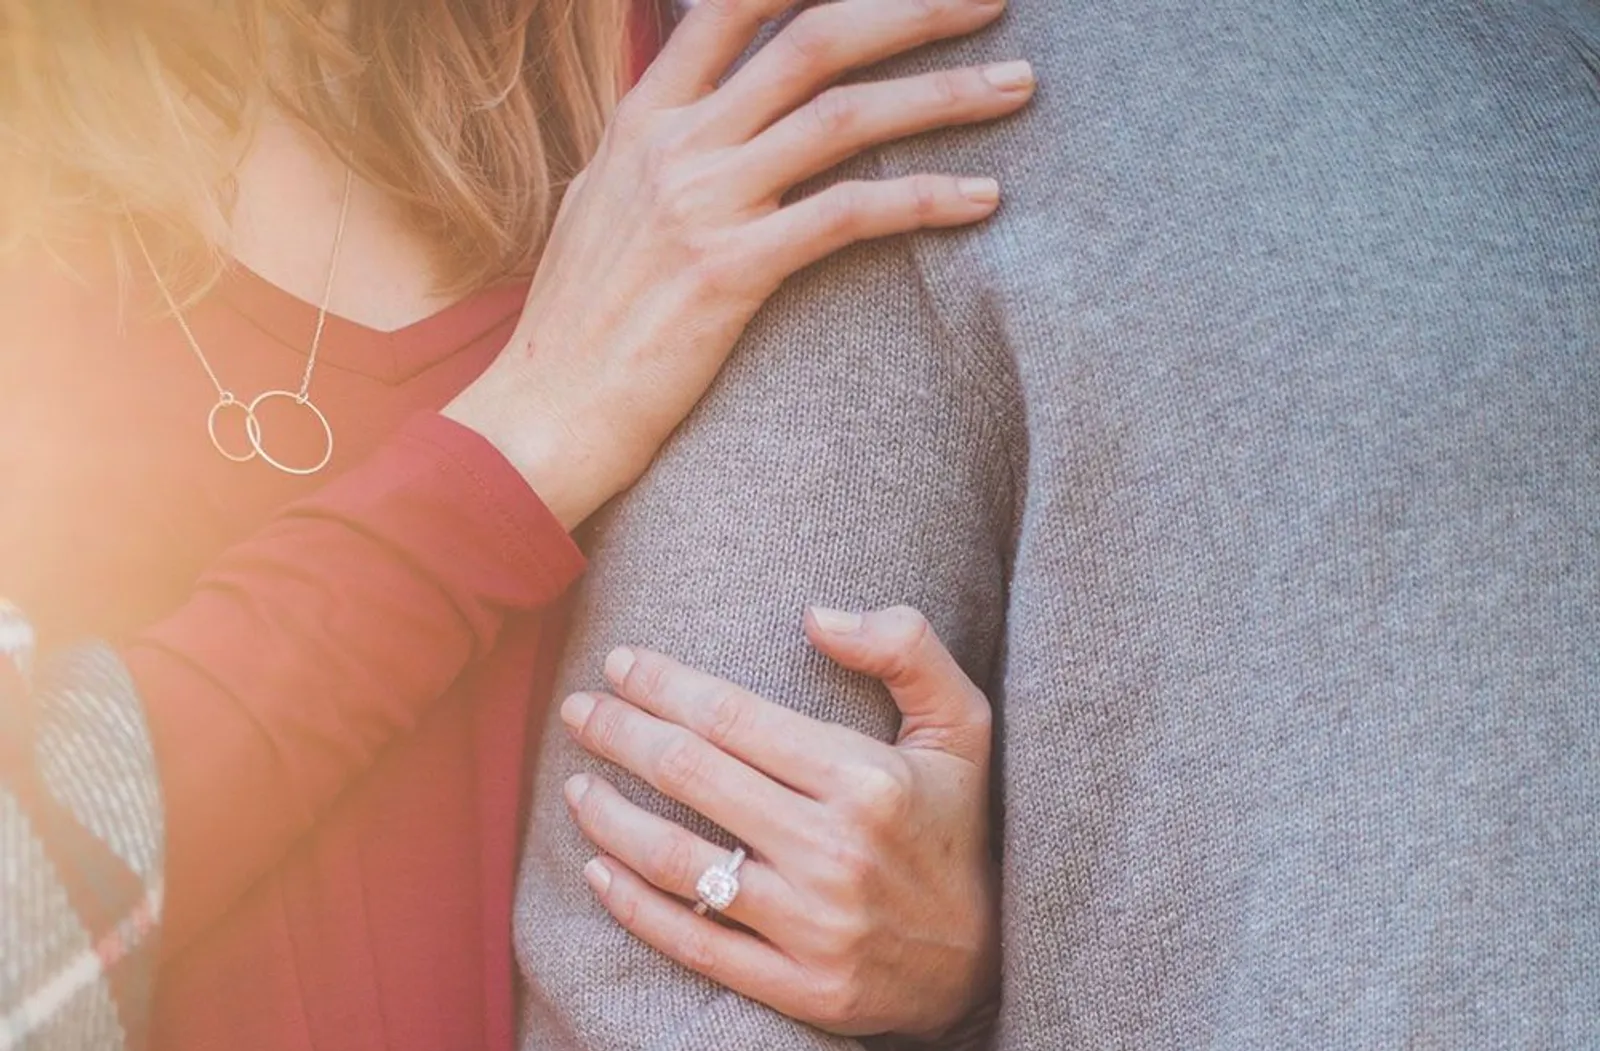 5 Sikap Romantis yang Bisa Bikin Kamu Sama Pacar Bosan dan Putus